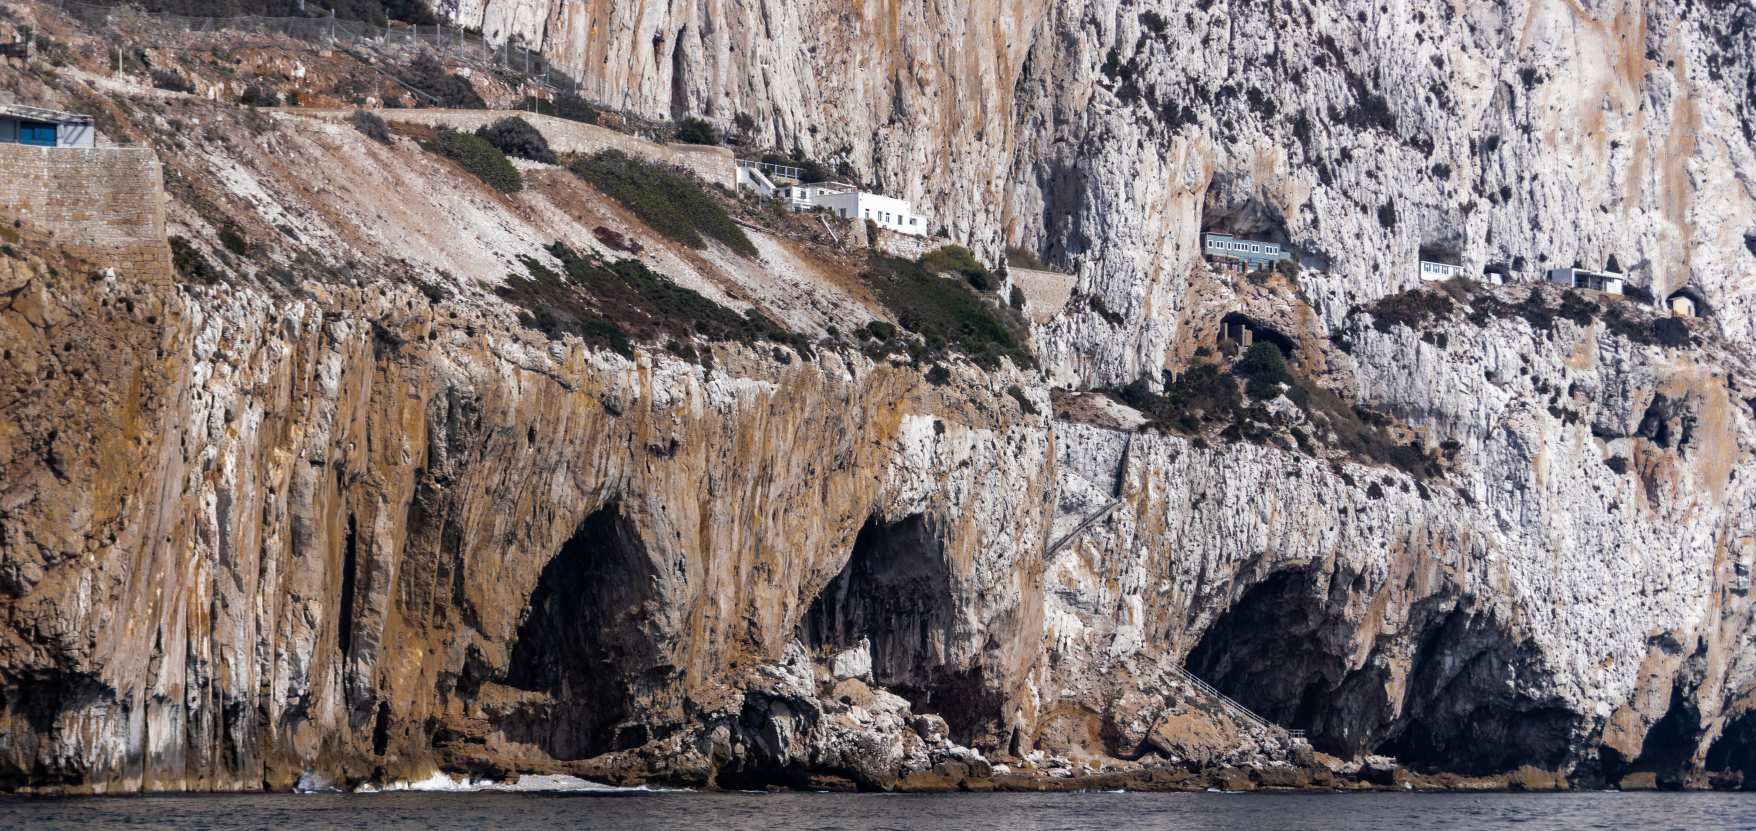 Пещерният комплекс на Горхам: Най-убедителното доказателство, че тази част от пещерата е била използвана от неандералите, е черупката на голямо охлювче, ядлив вид морски охлюв. © Кредит на изображението: Алън Кларк/Shutterstock